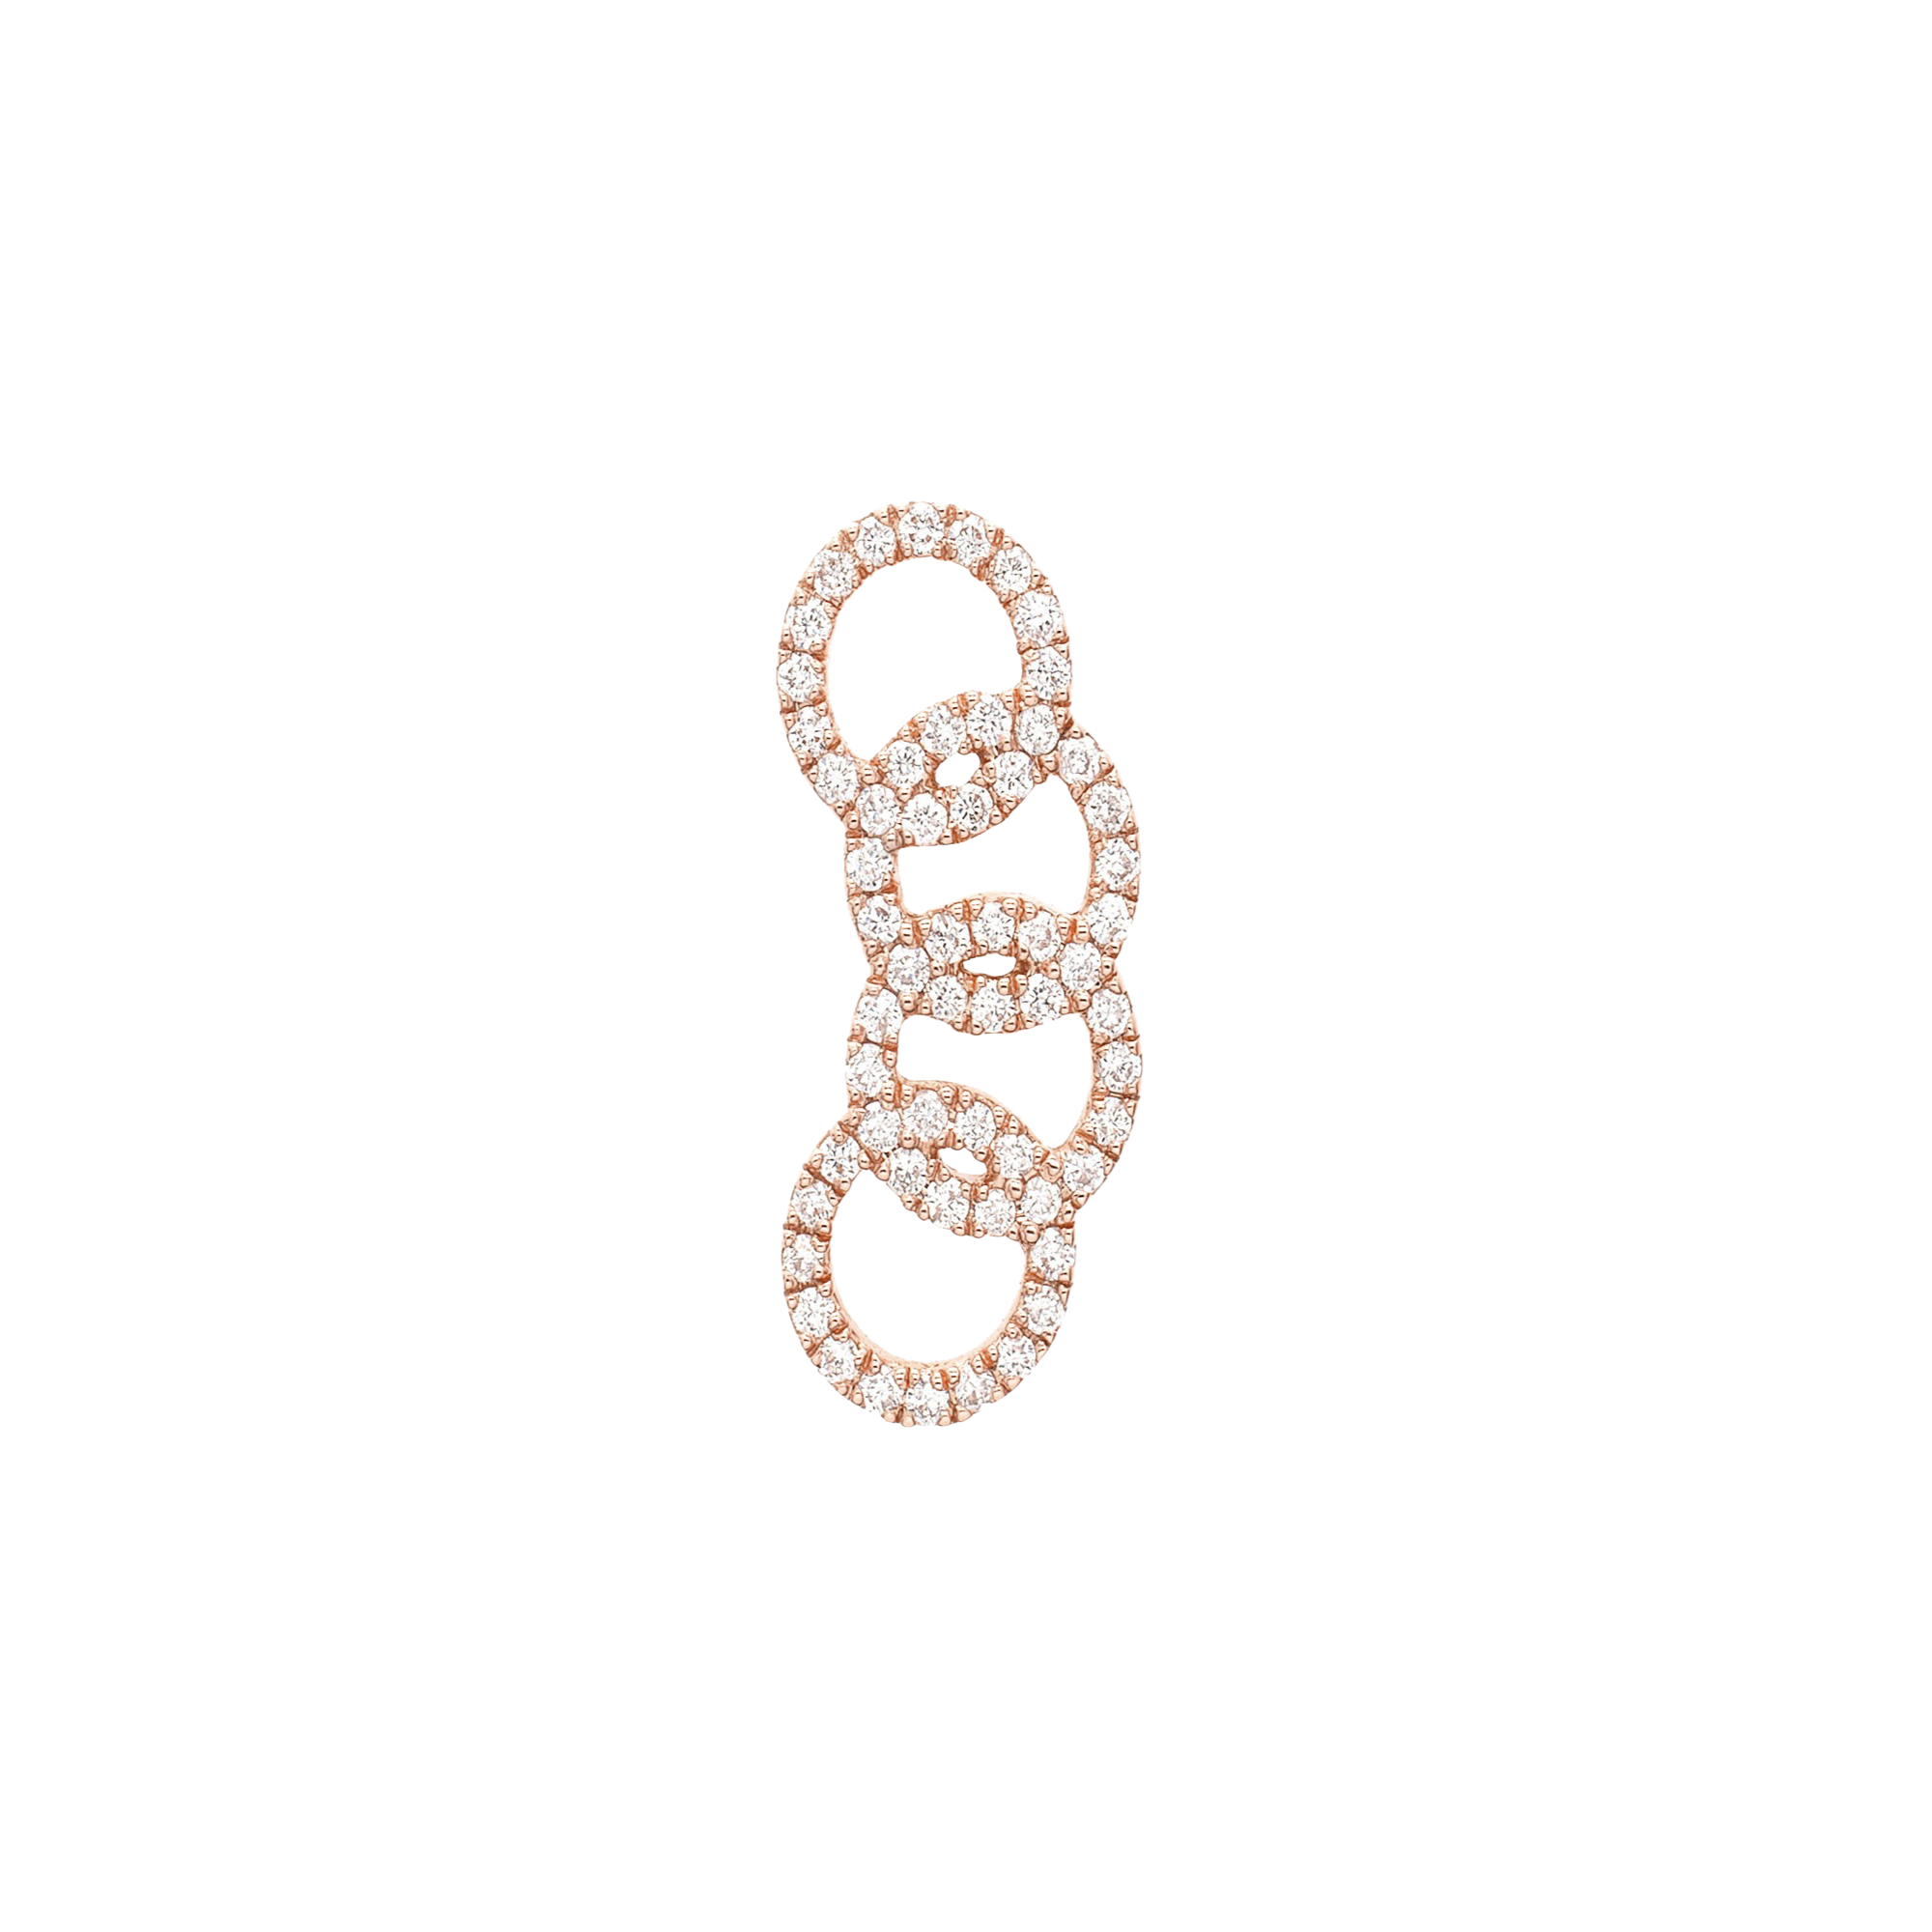 Mono boucle d'oreilles montante en or rose et diamants fabriqué en France, bijou cadeau tendance rock pour femmes.